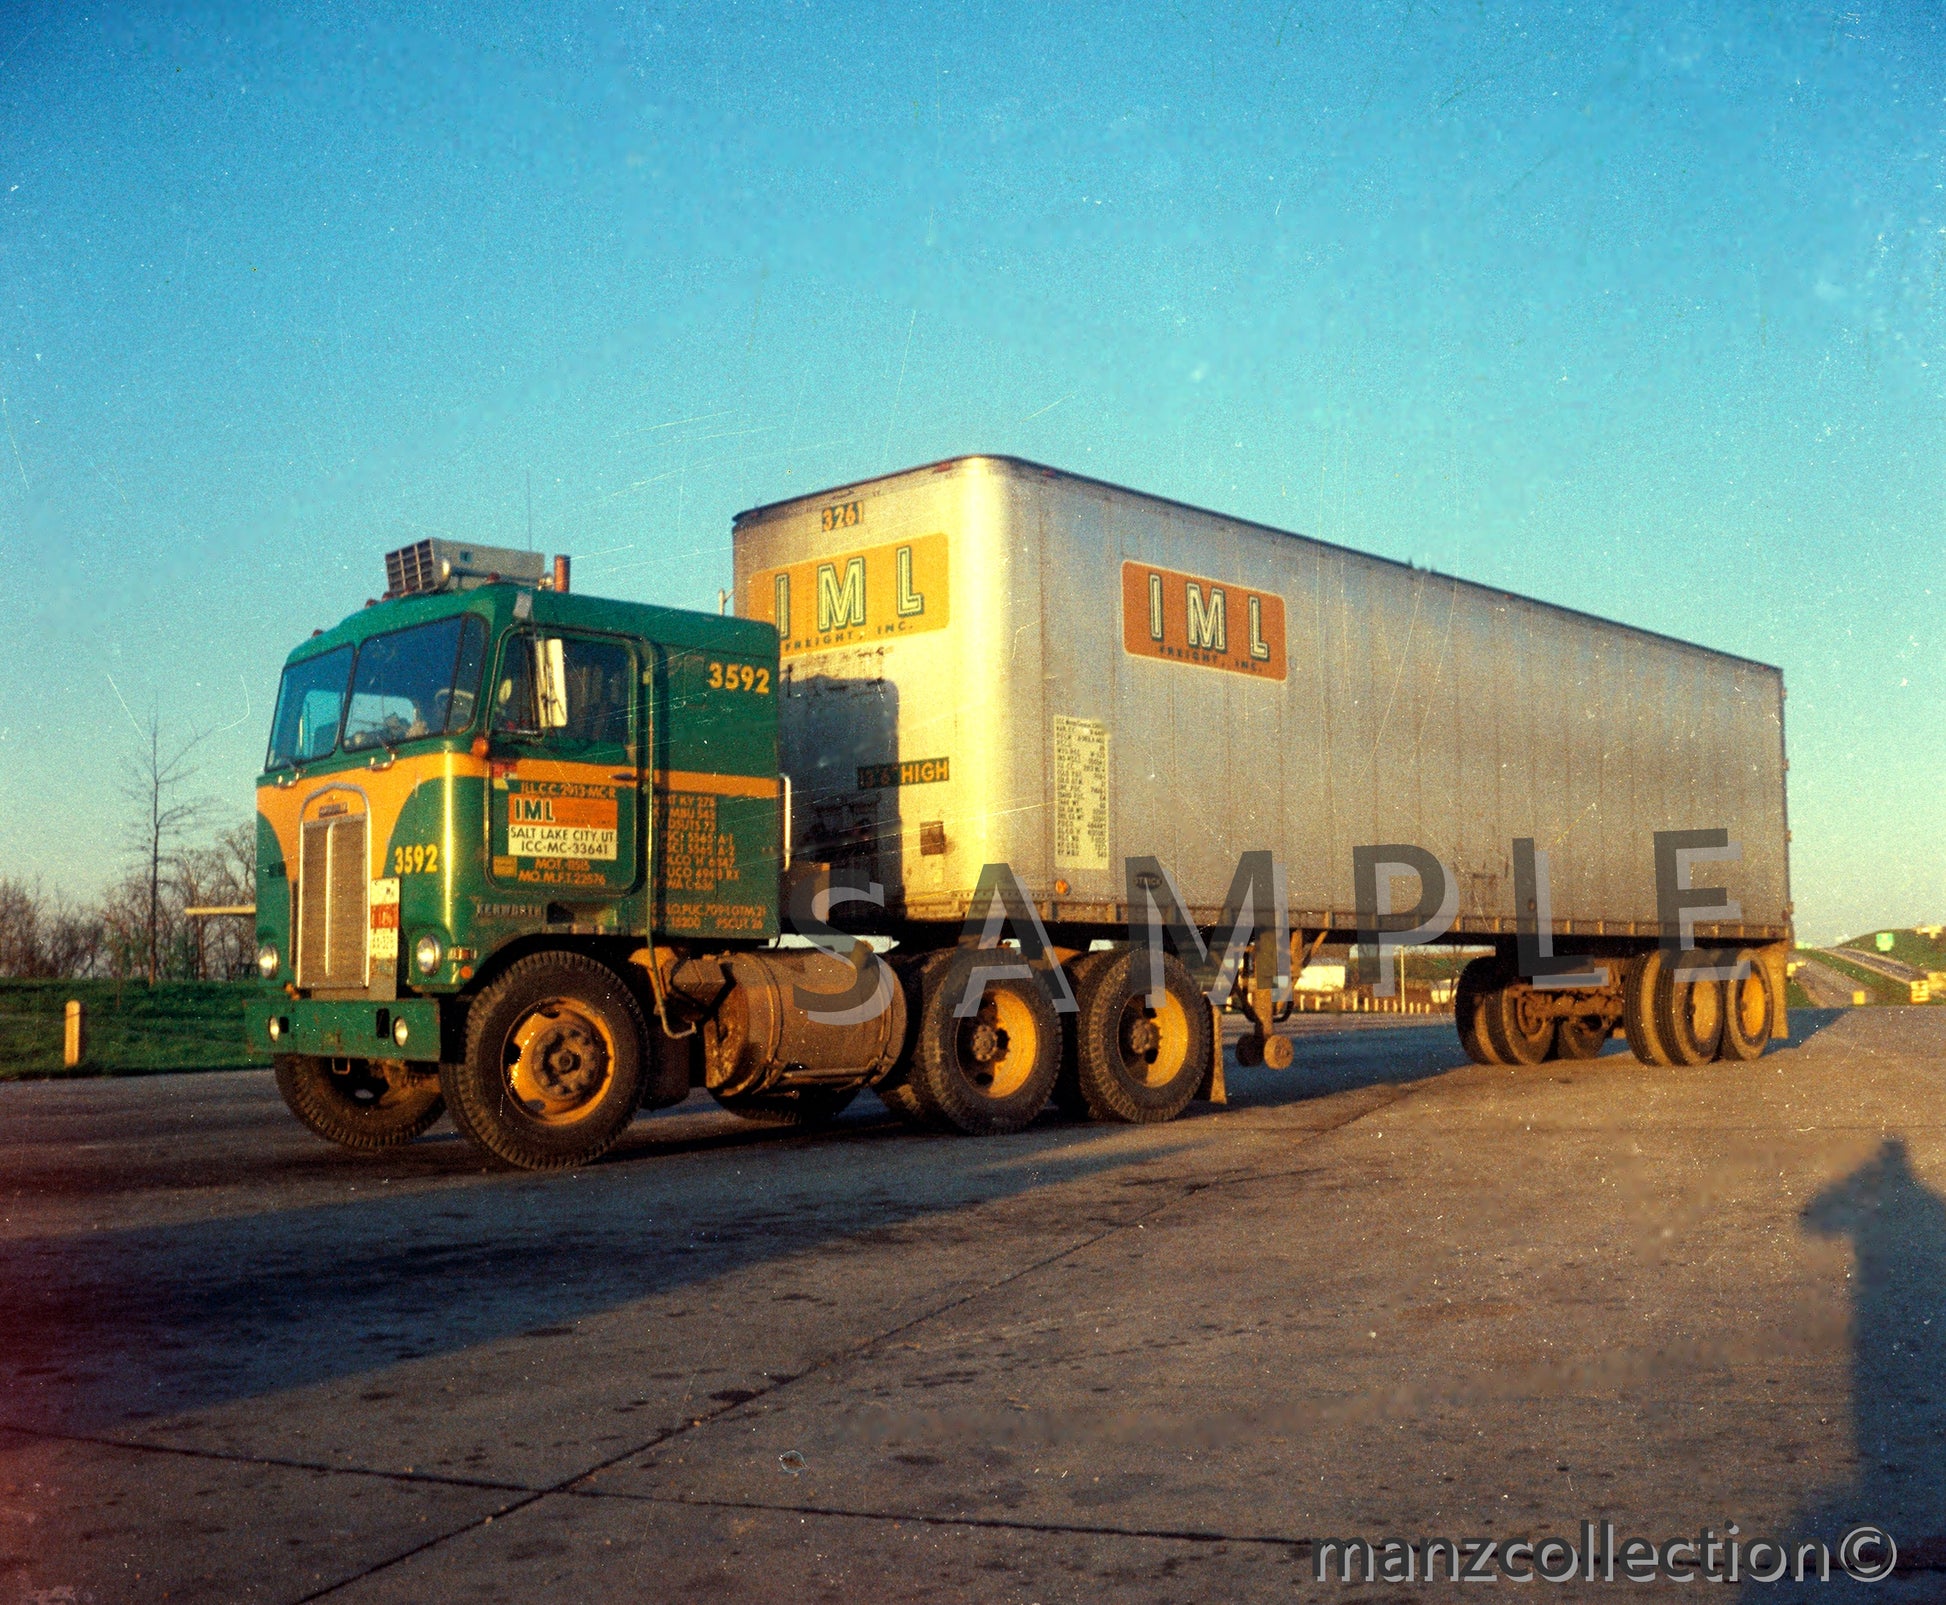 8X10 color semi-truck photo 1960's KW IML - Transportation Treasure